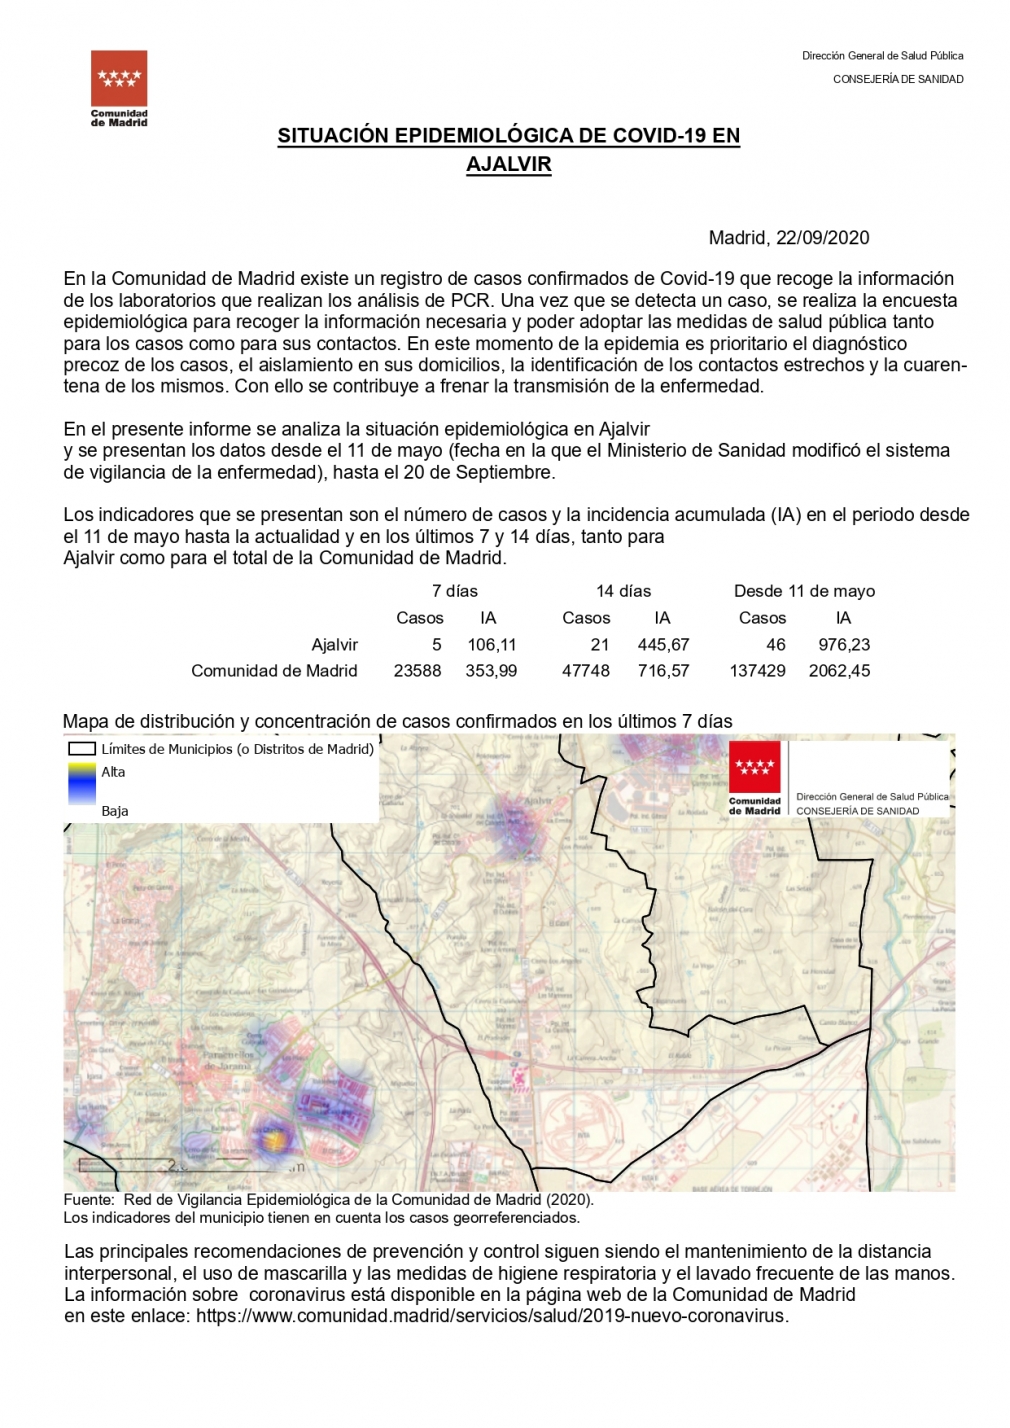 Informe de situación Epidemiológica de COVID-19 a fecha 21 de septiembre de 2020 en Ajalvir.